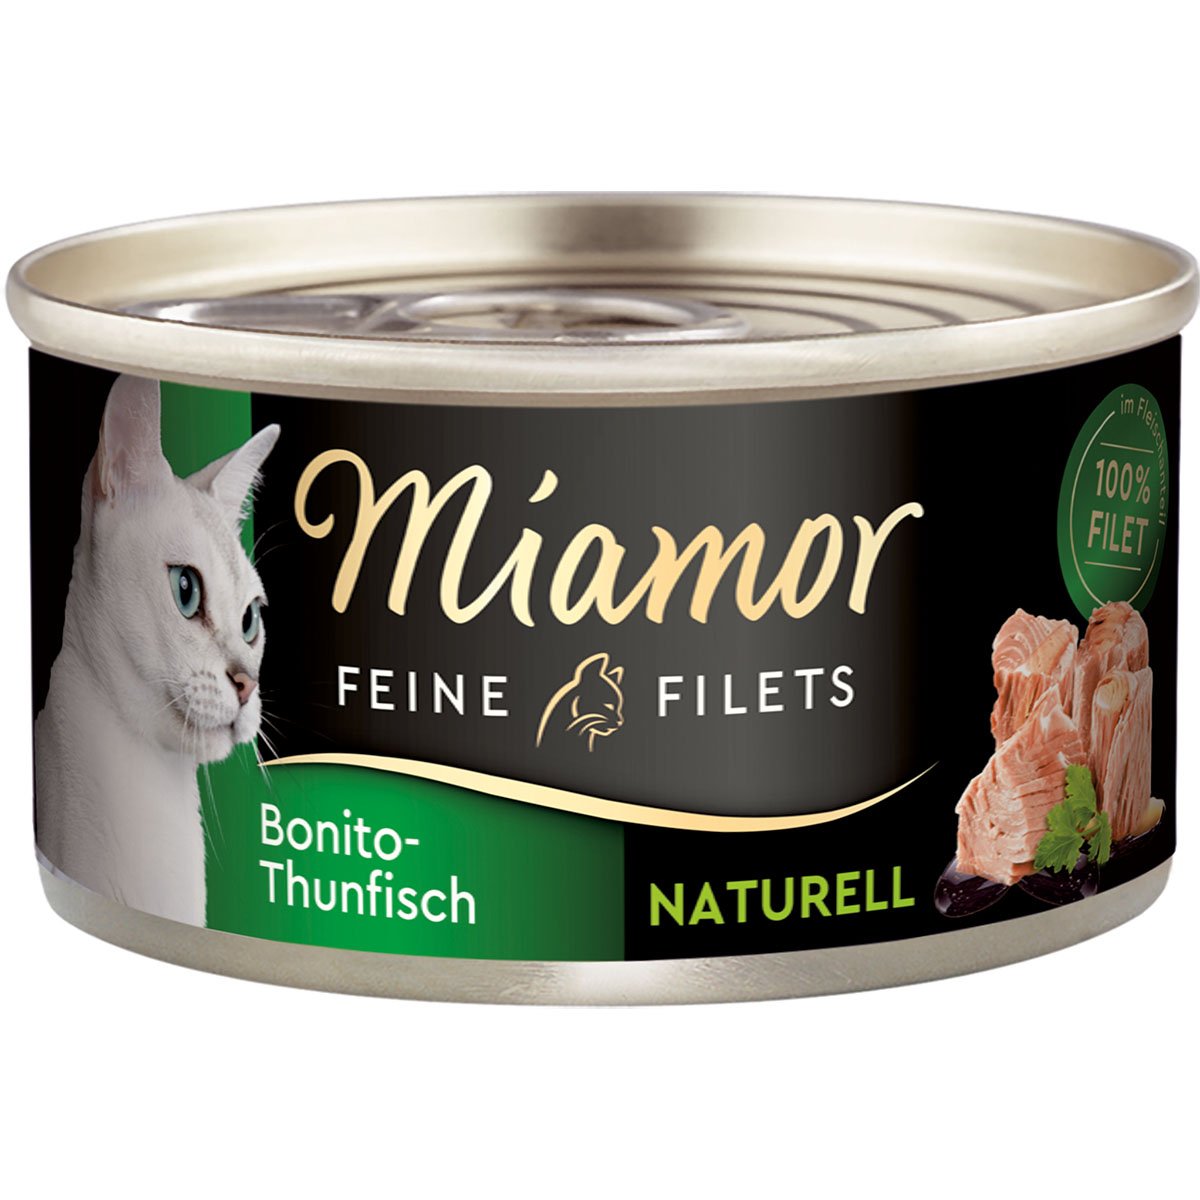 Miamor Feine Filets Naturelle Bonito-Thunfisch 48x80g